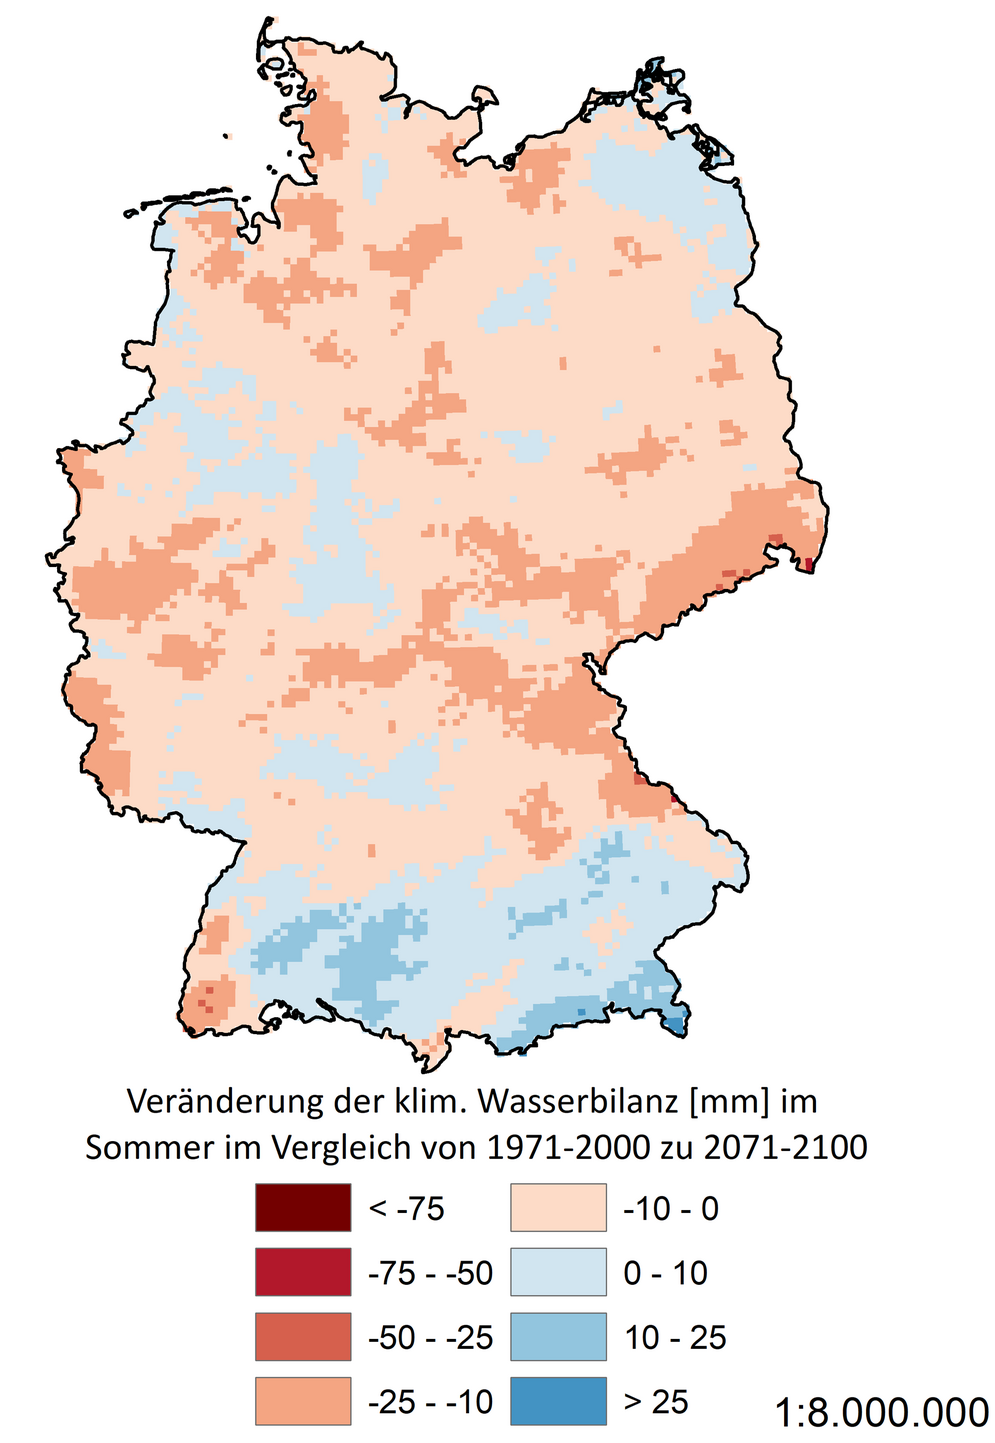 Eine Deutschlandkarte zeigt die Veränderung der klimatischen Wasserbilanz im Sommer unter dem Klimaszenario „Begrenzter Klimaschutz“ (RCP 4.5).